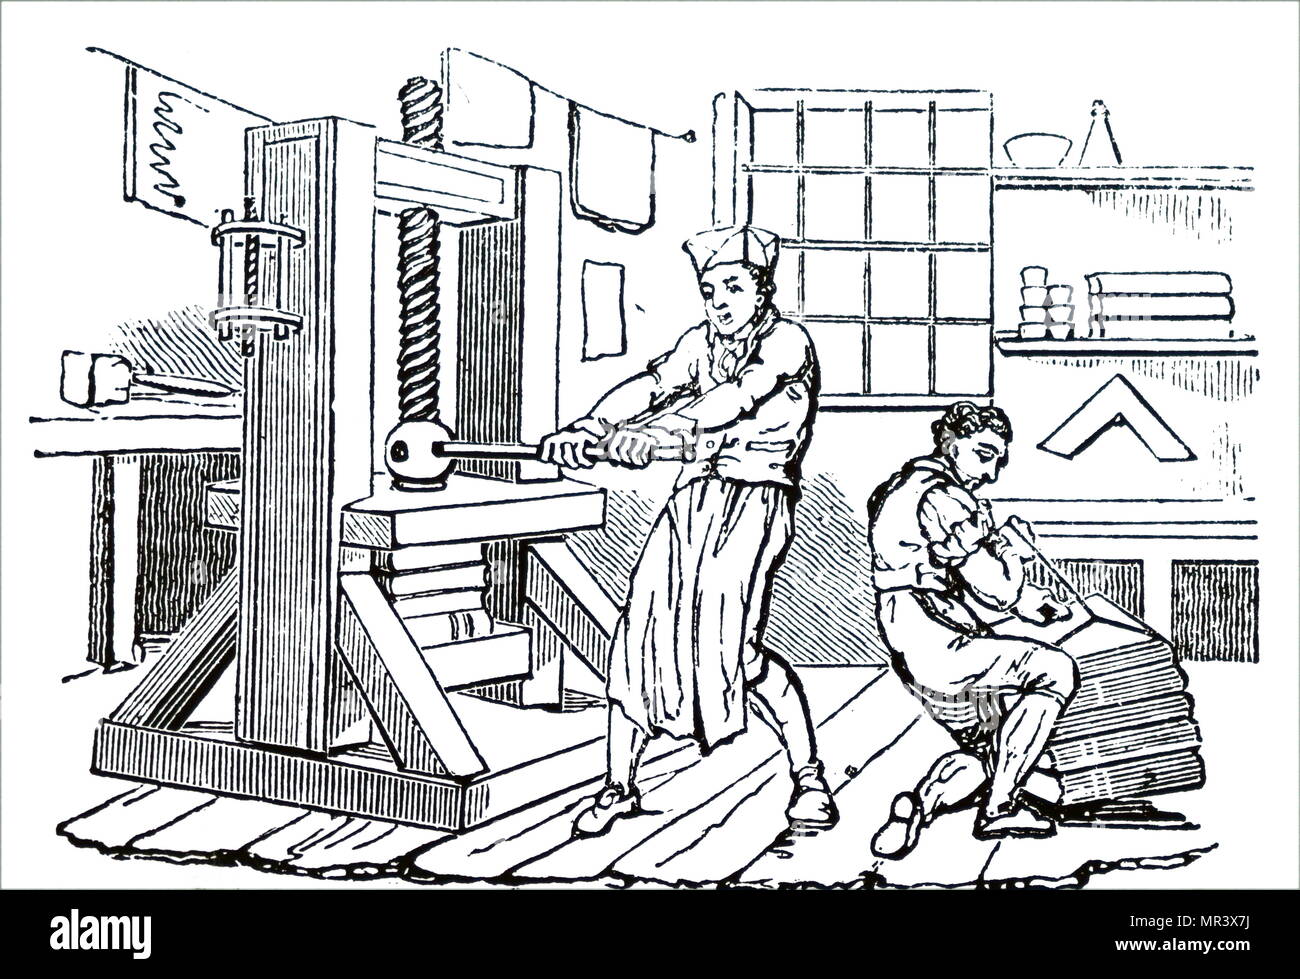 Grabado representando la compresión de hojas impresas en una prensa manual previo a la encuadernación. Fecha del siglo XIX Foto de stock